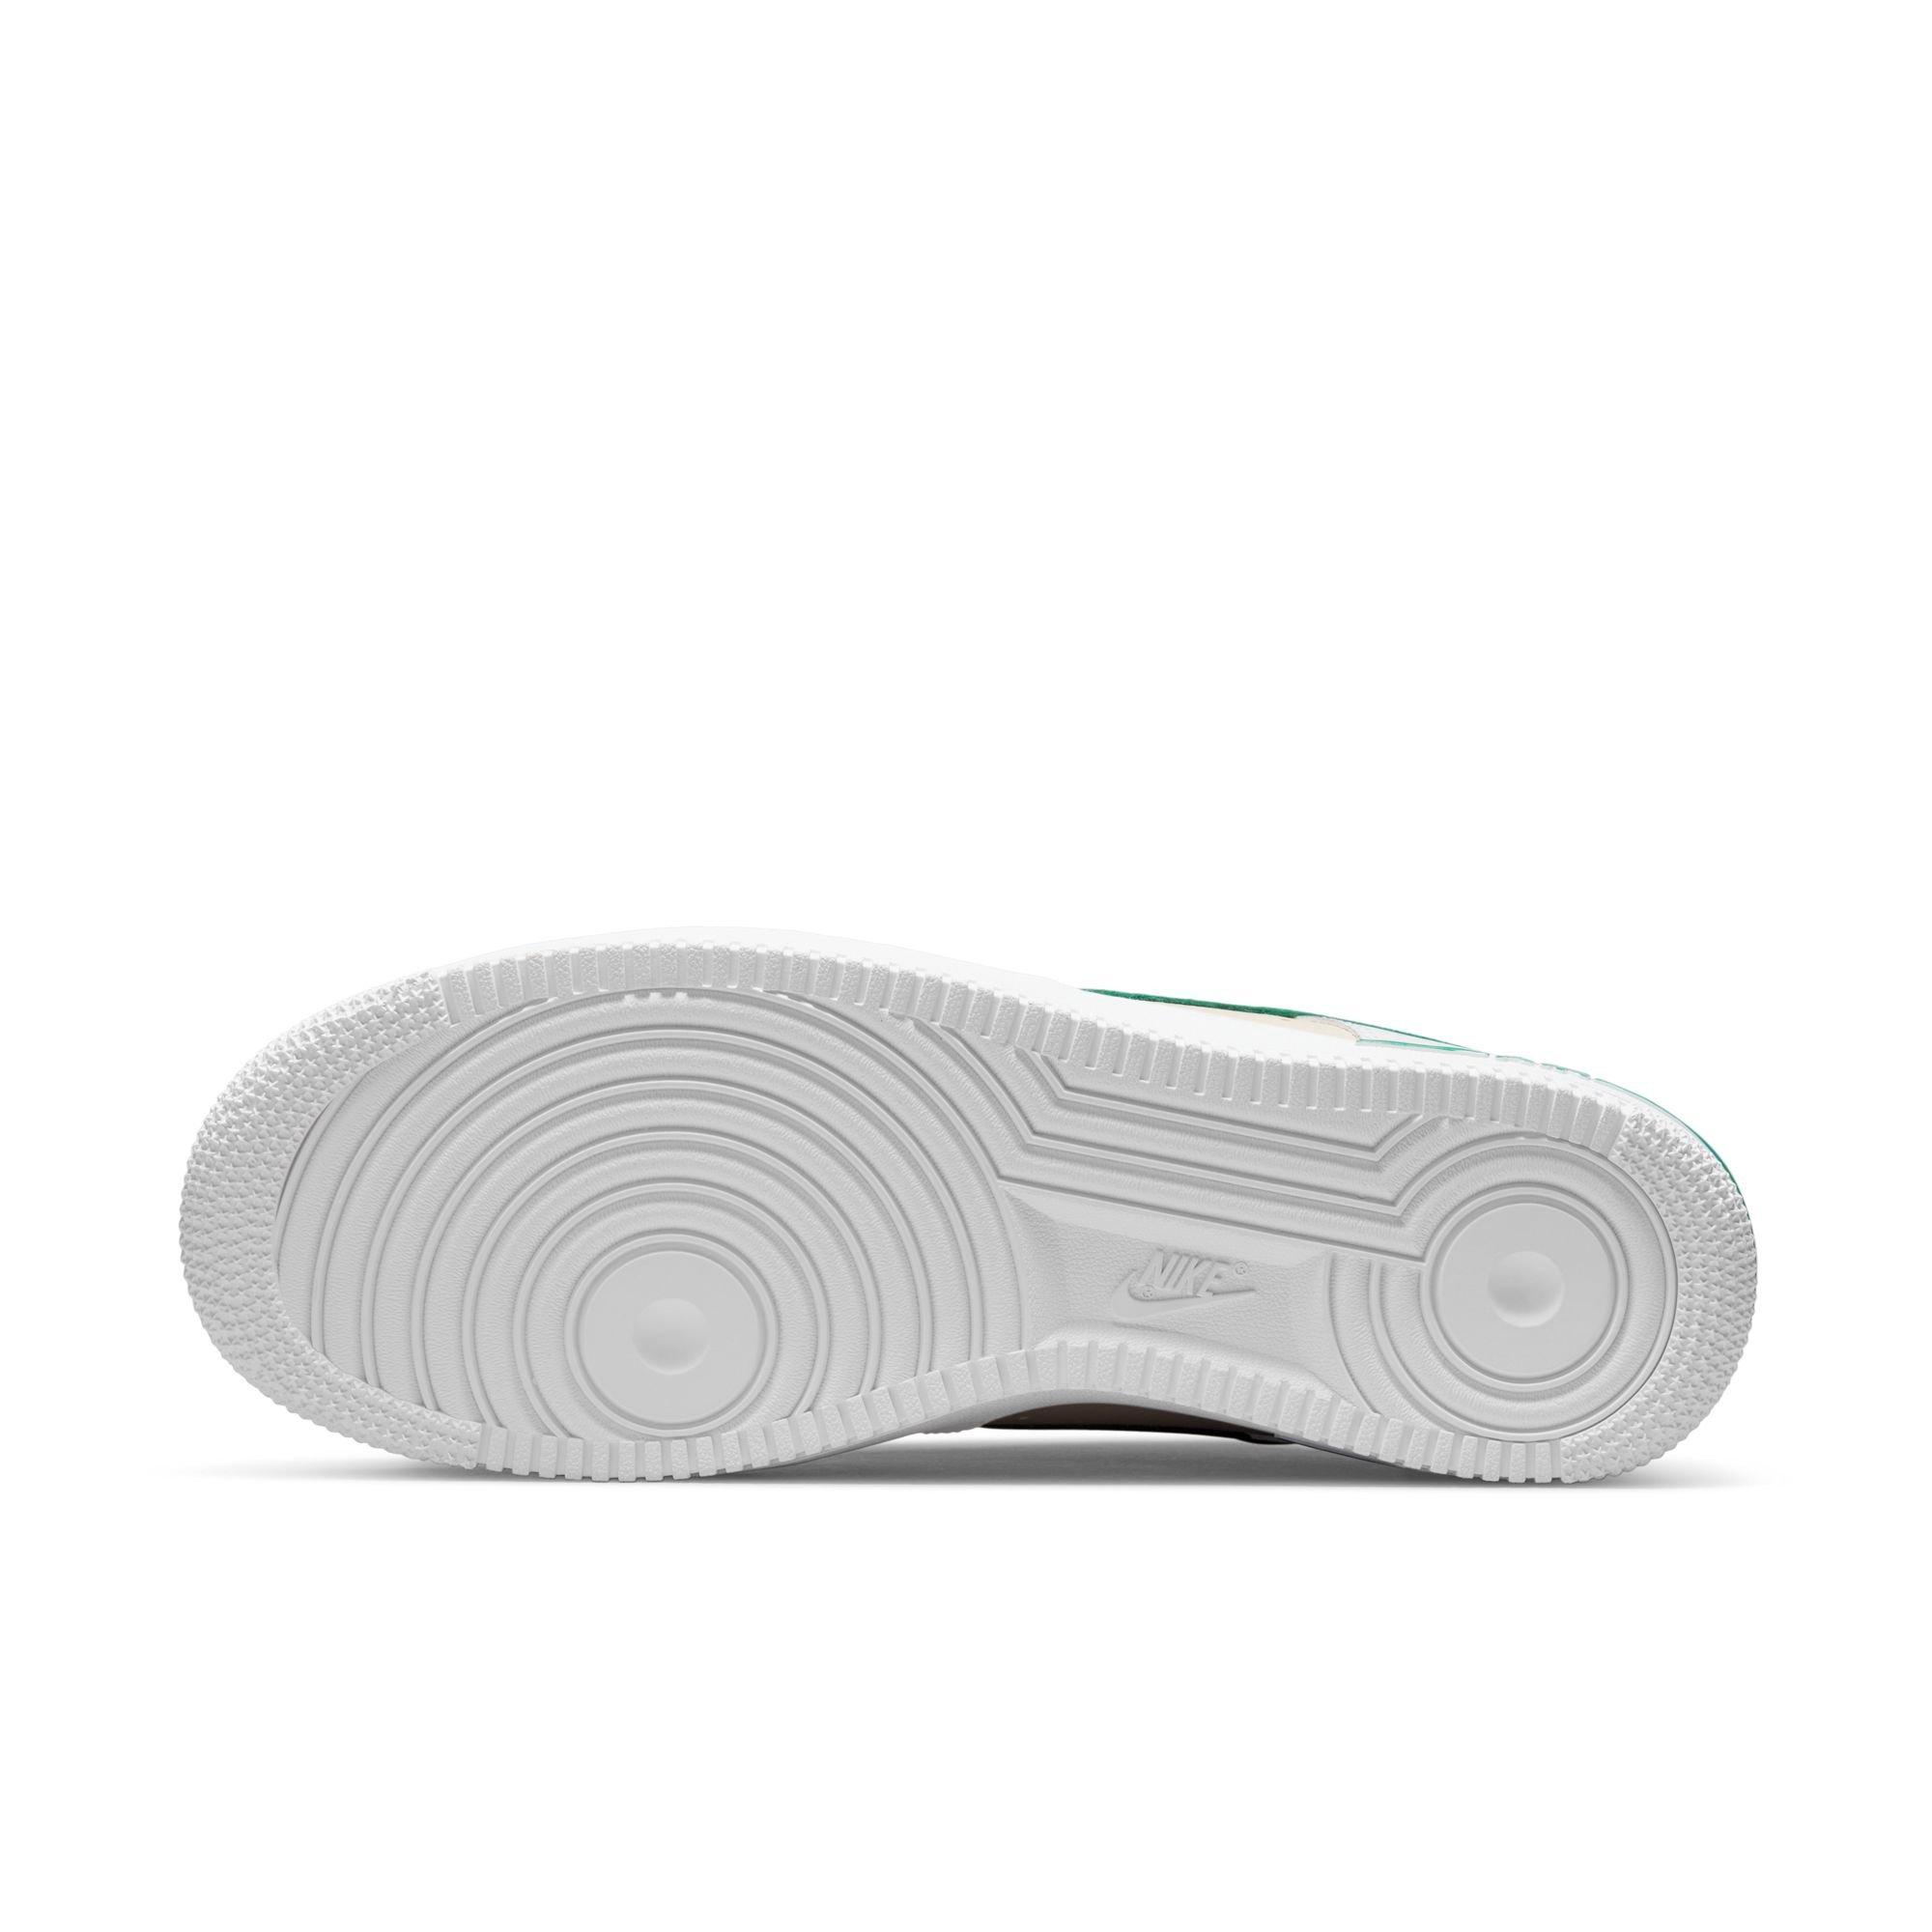 Nike Air Force 1 '07 LV8 EMB White Malachite Sneakers - Farfetch